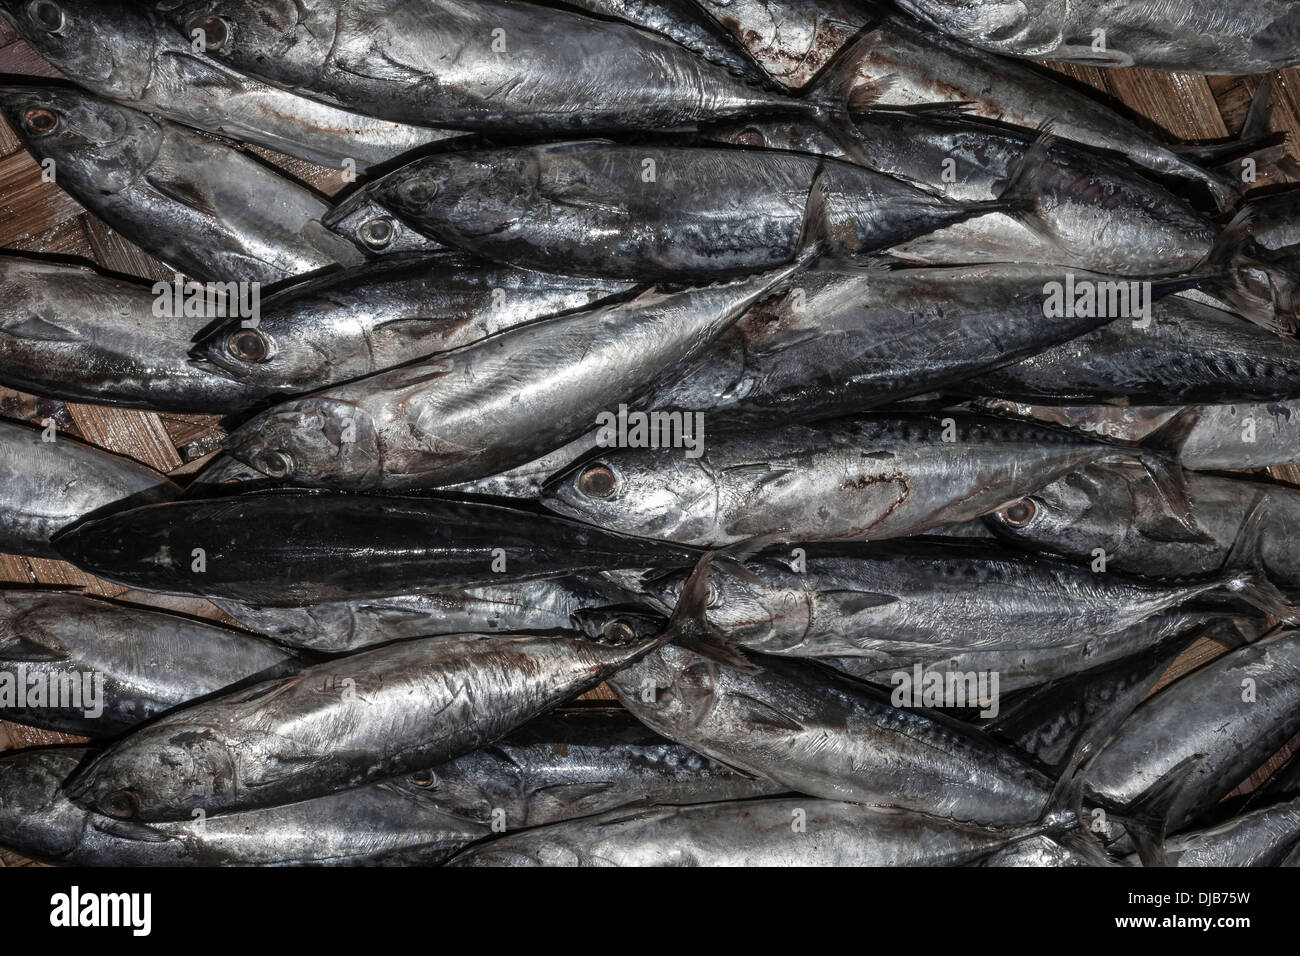 Nha Trang, Vietnam-Dam-Markt, frische Fisch-display Stockfoto